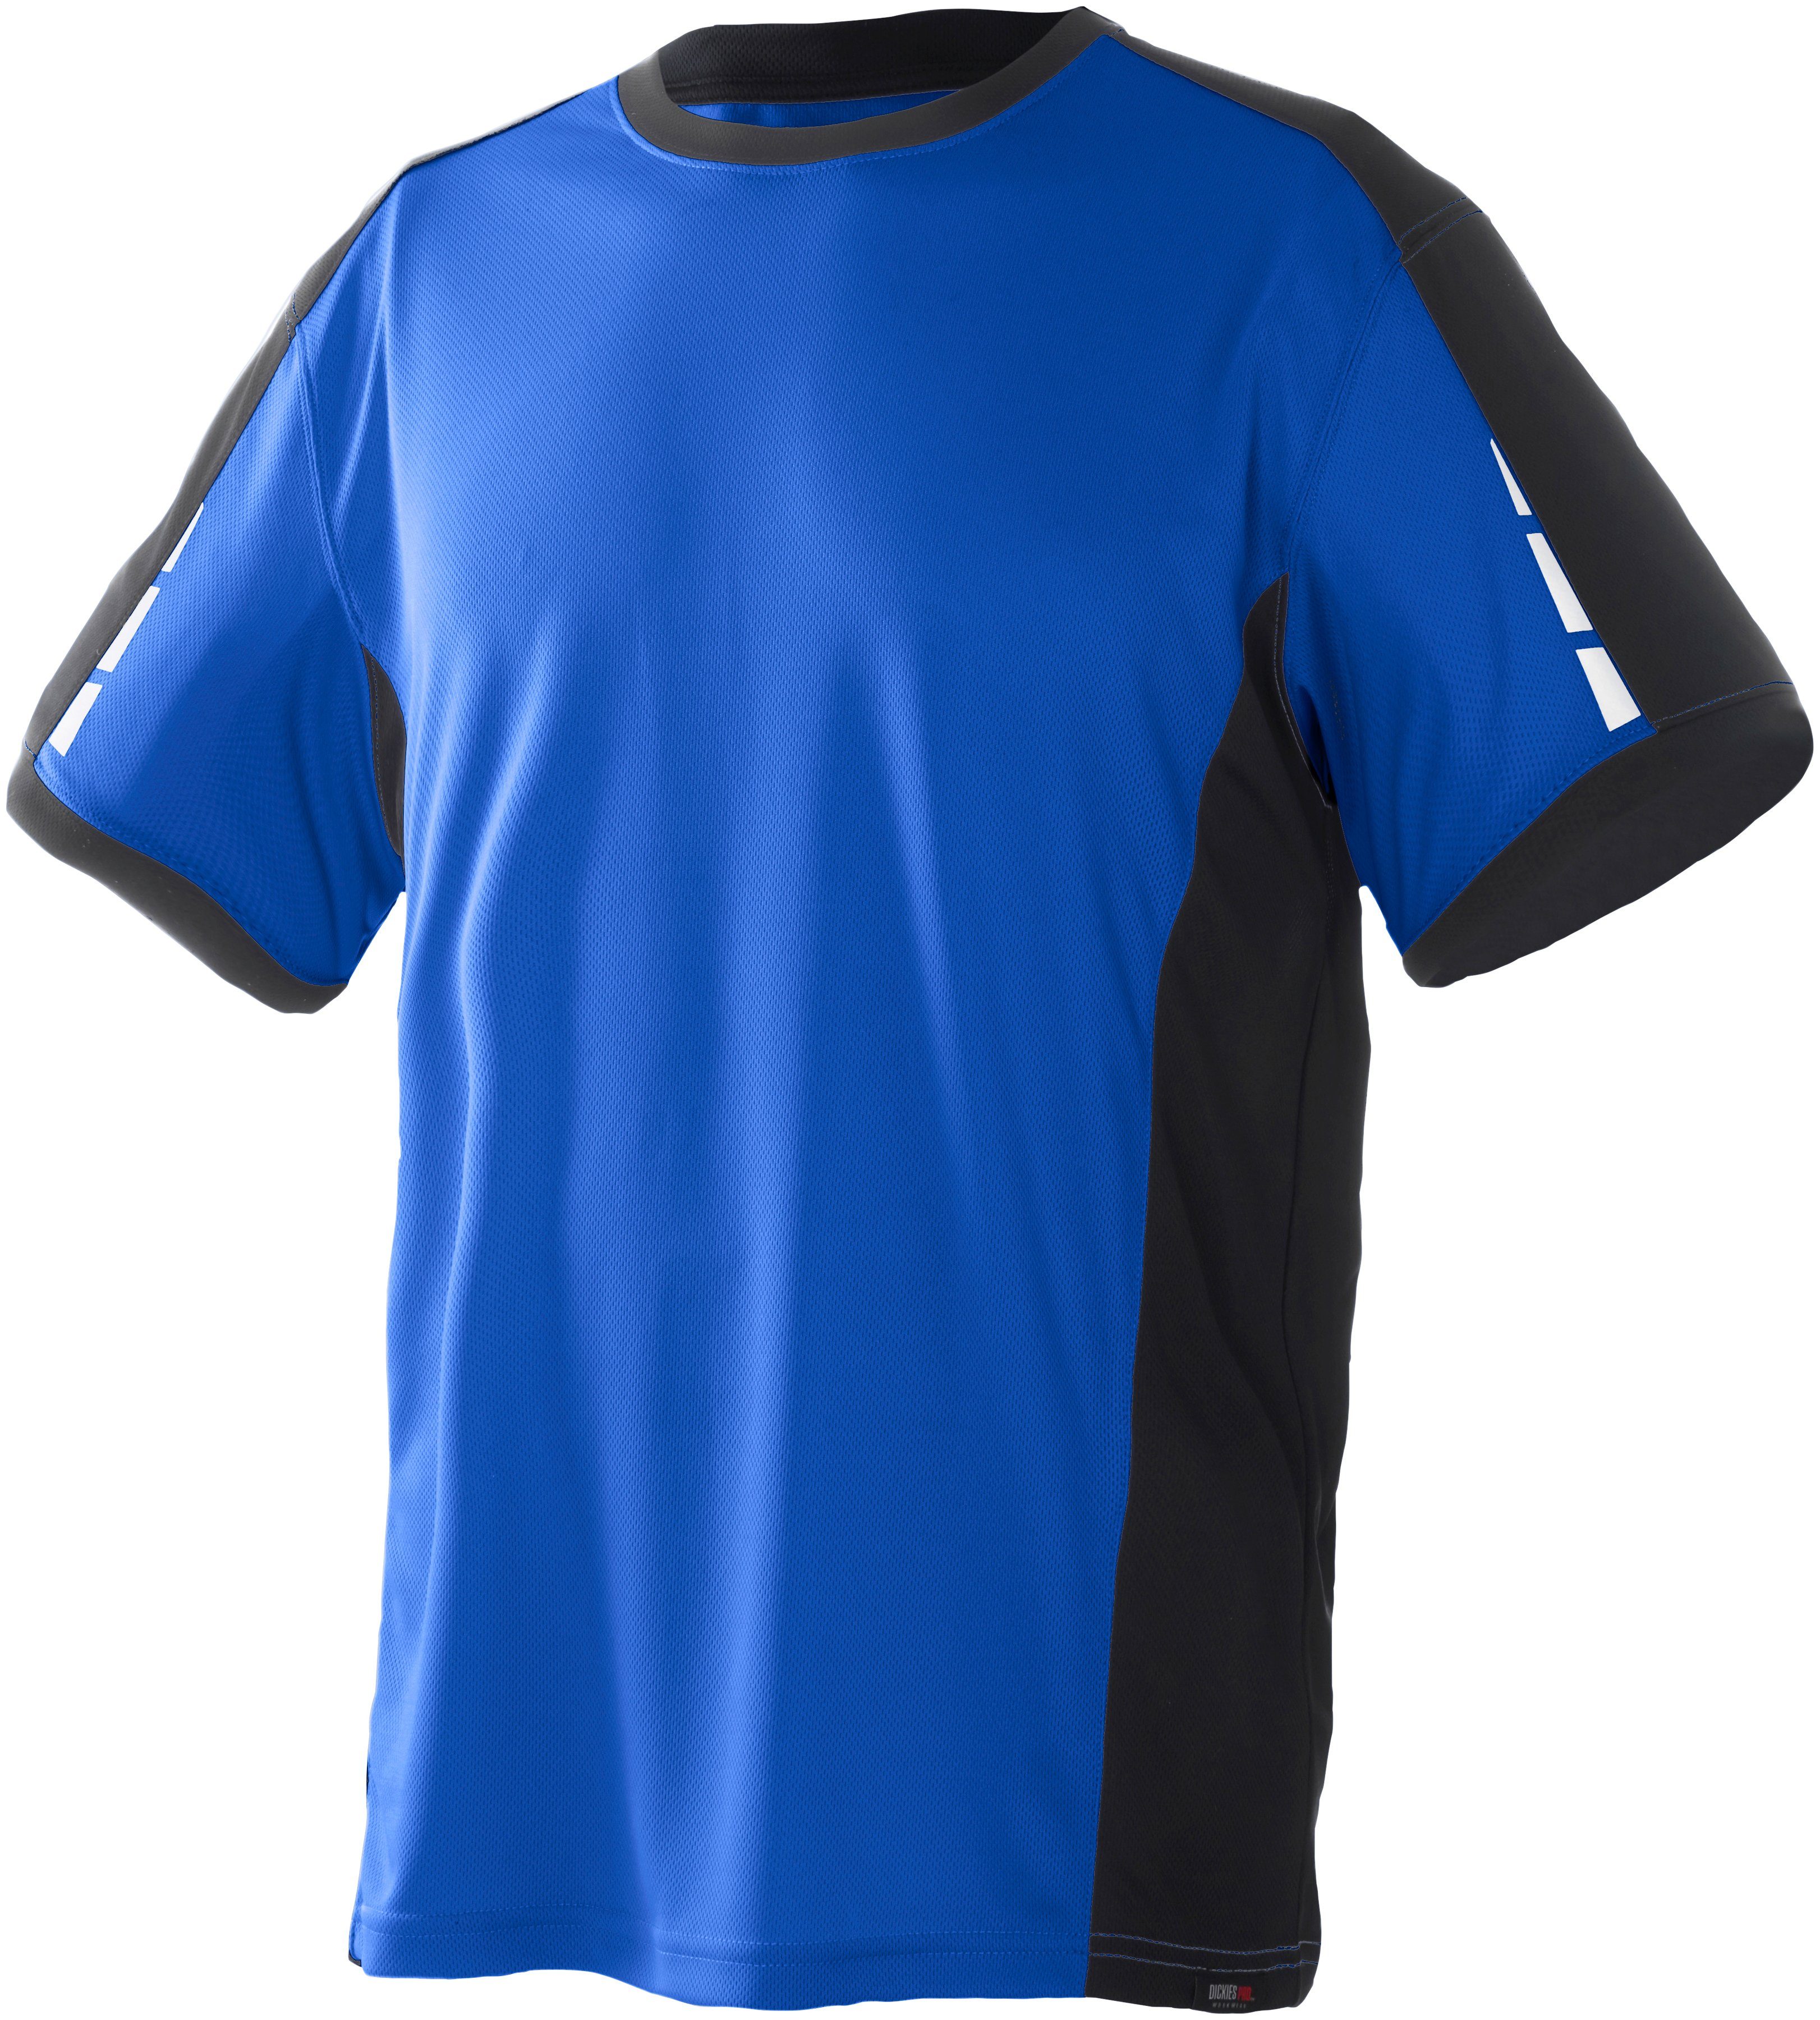 Dickies T-Shirt Pro mit reflektierenden den Details an Ärmeln royalblau-schwarz